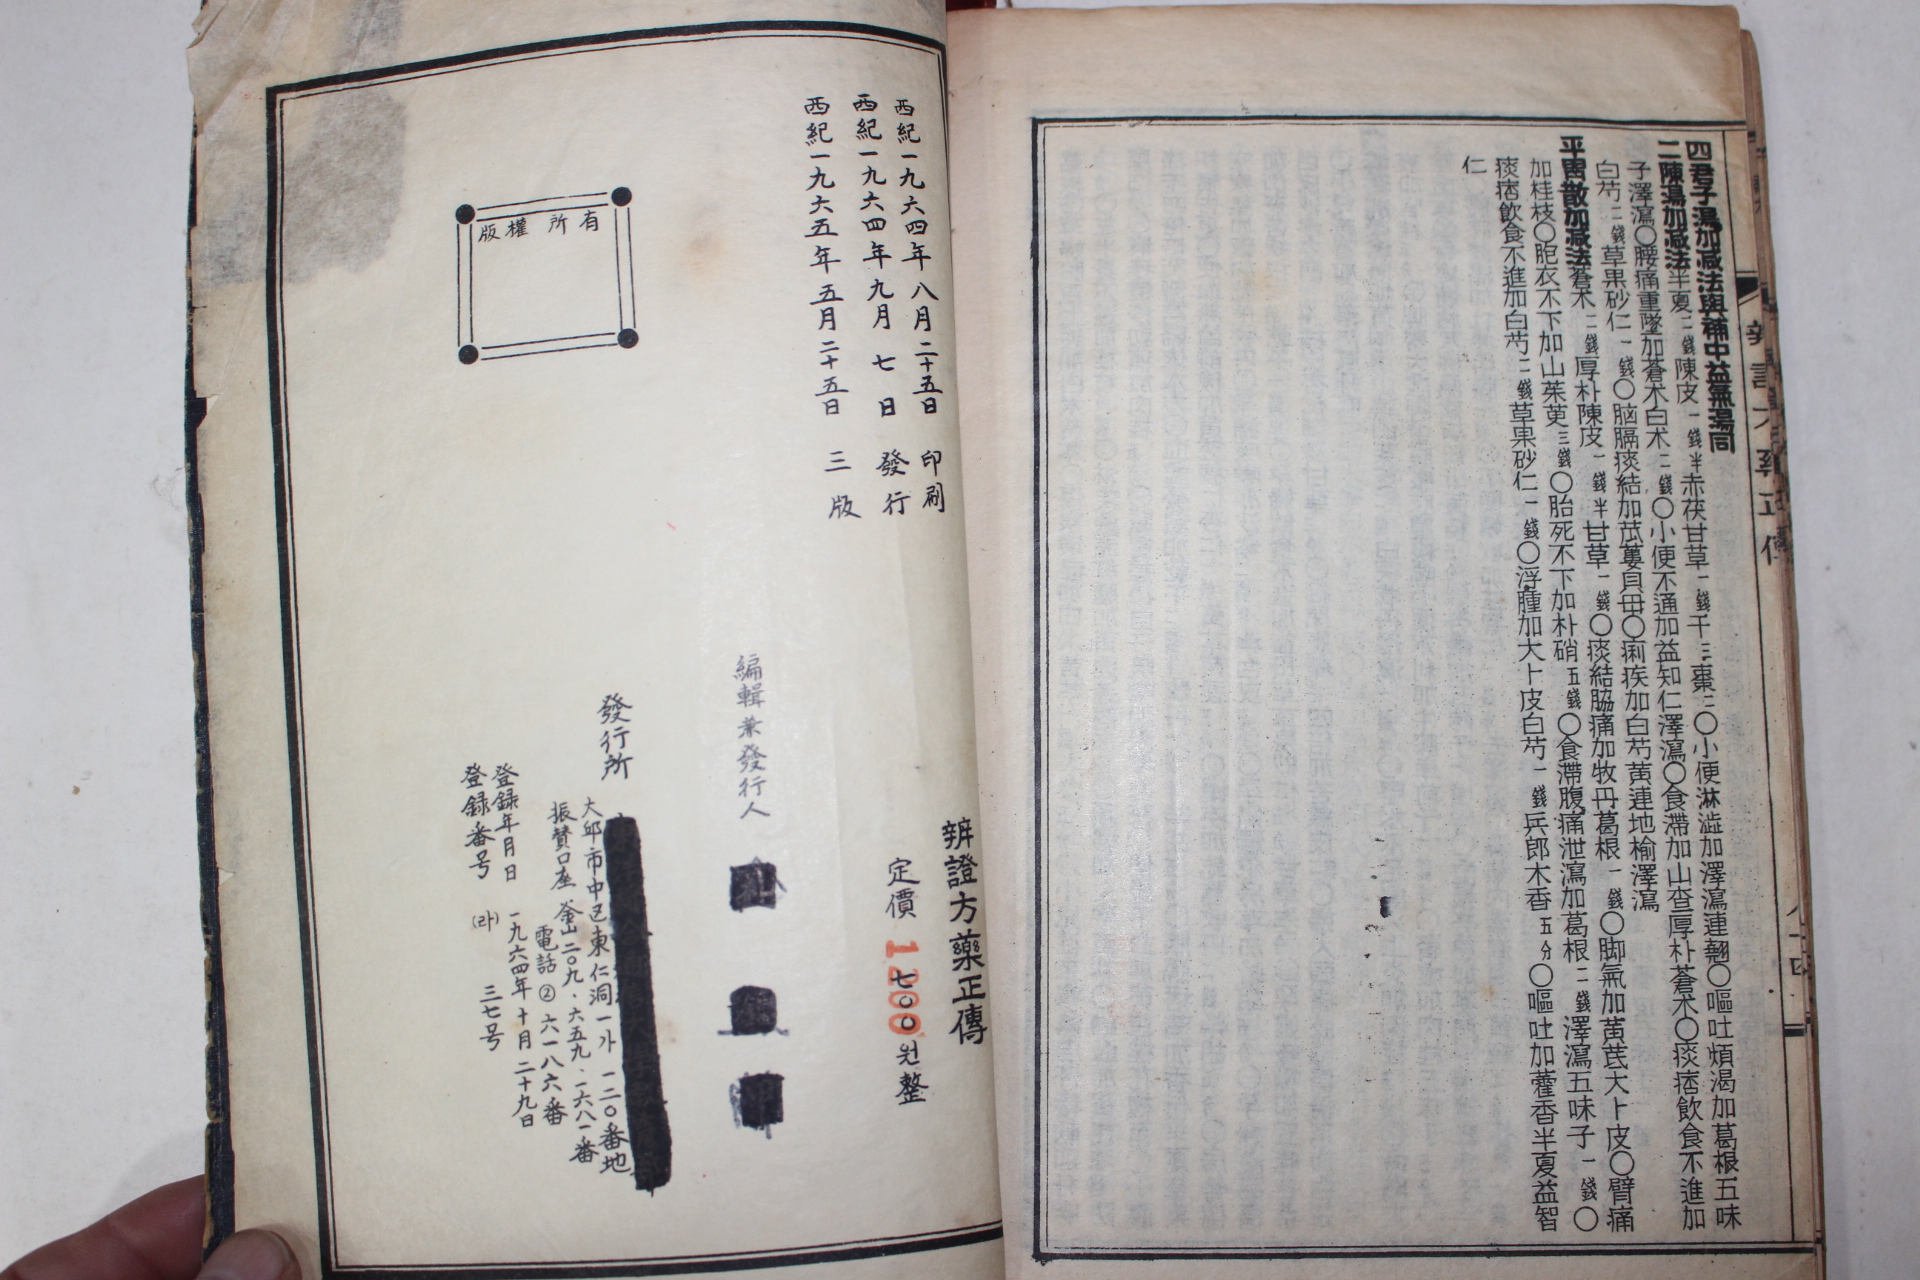 1965년 의서 이상화(李常和) 변증방약정전(辨證方藥正傳)1책완질